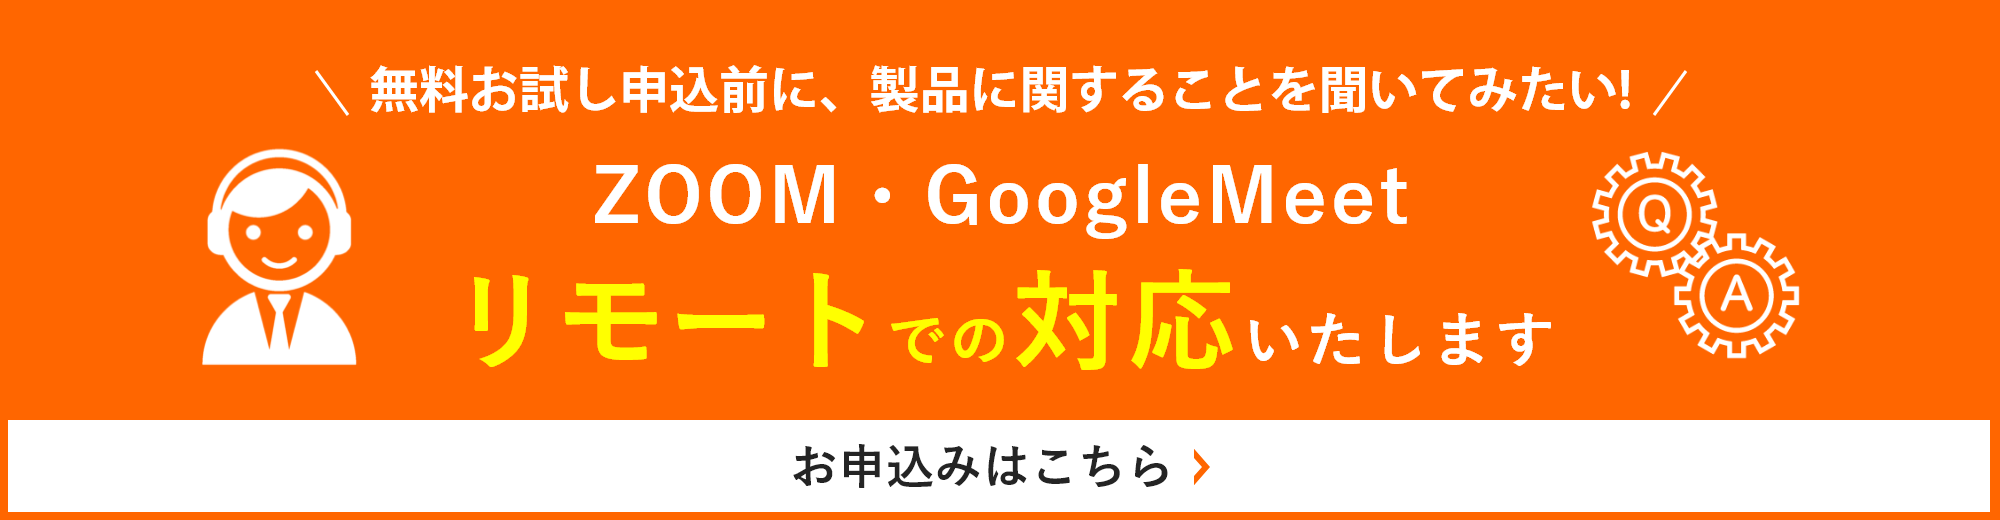 ZOOM・GoogleMeetリモートでの対応いたします。詳しくはこちら